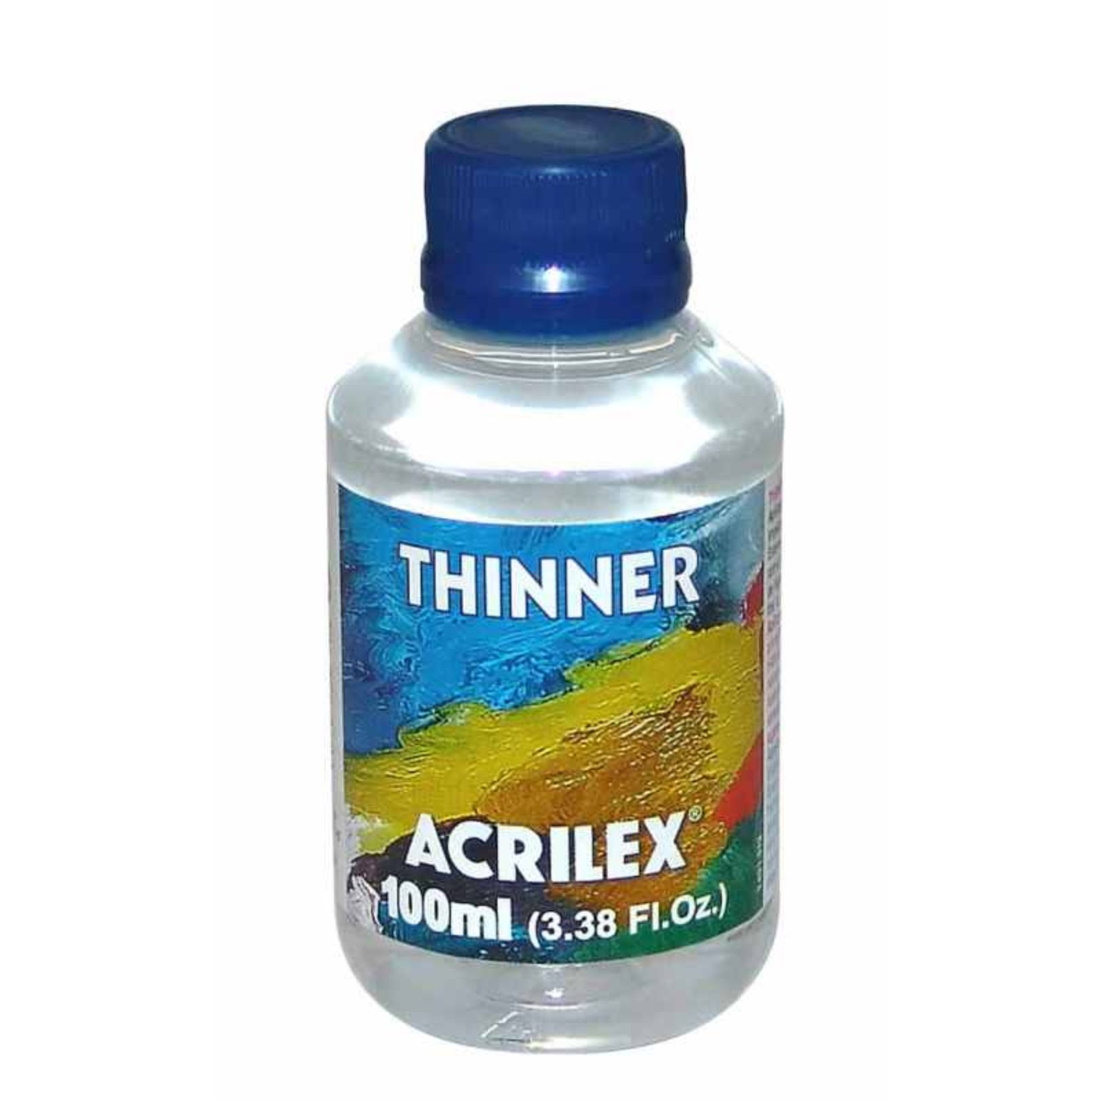 Thinner Acrilex